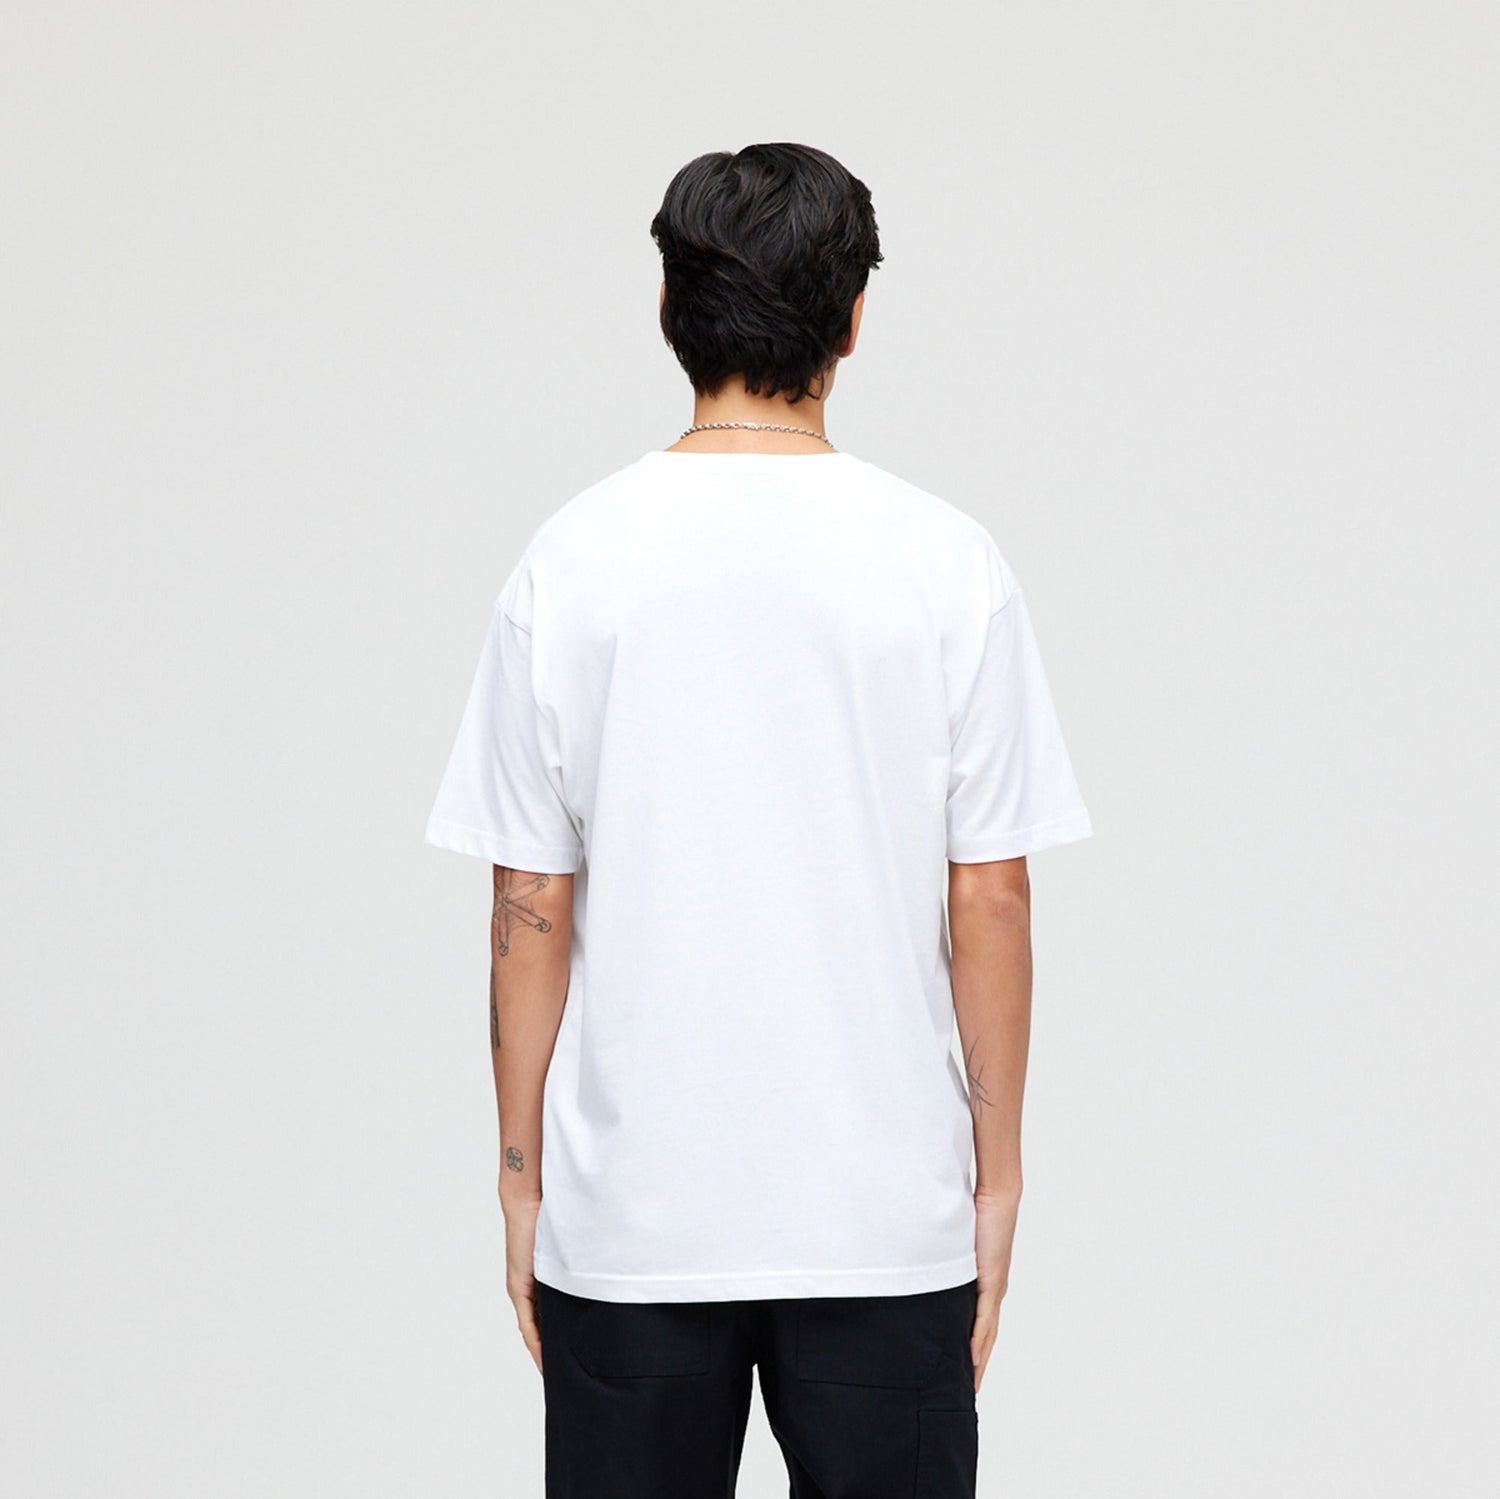 T-shirt Ankle Biter blanc de Stance | modèle